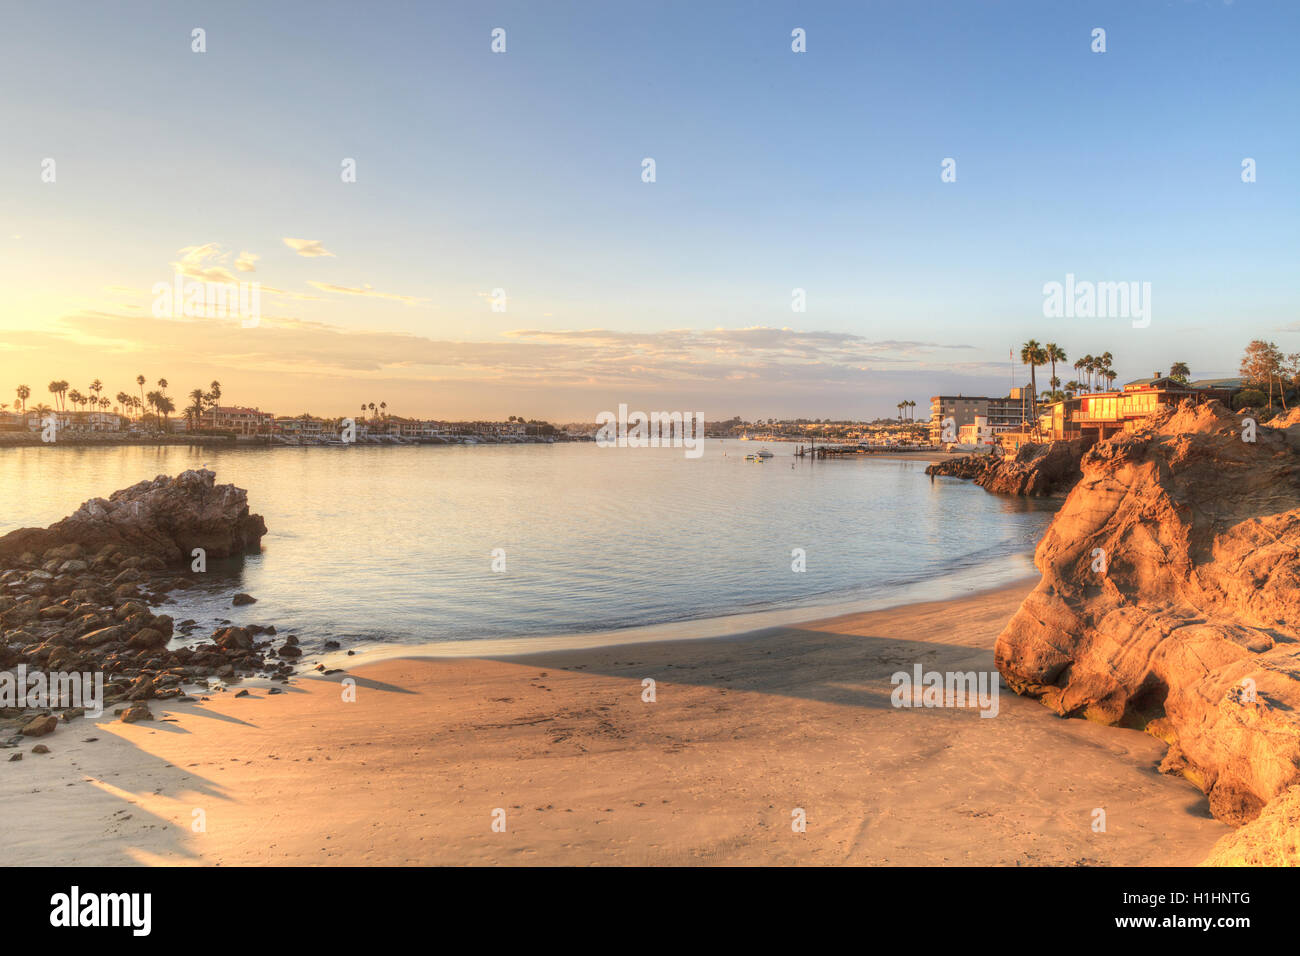 Tramonto sul porto di Corona del Mar, California presso la spiaggia negli Stati Uniti Foto Stock